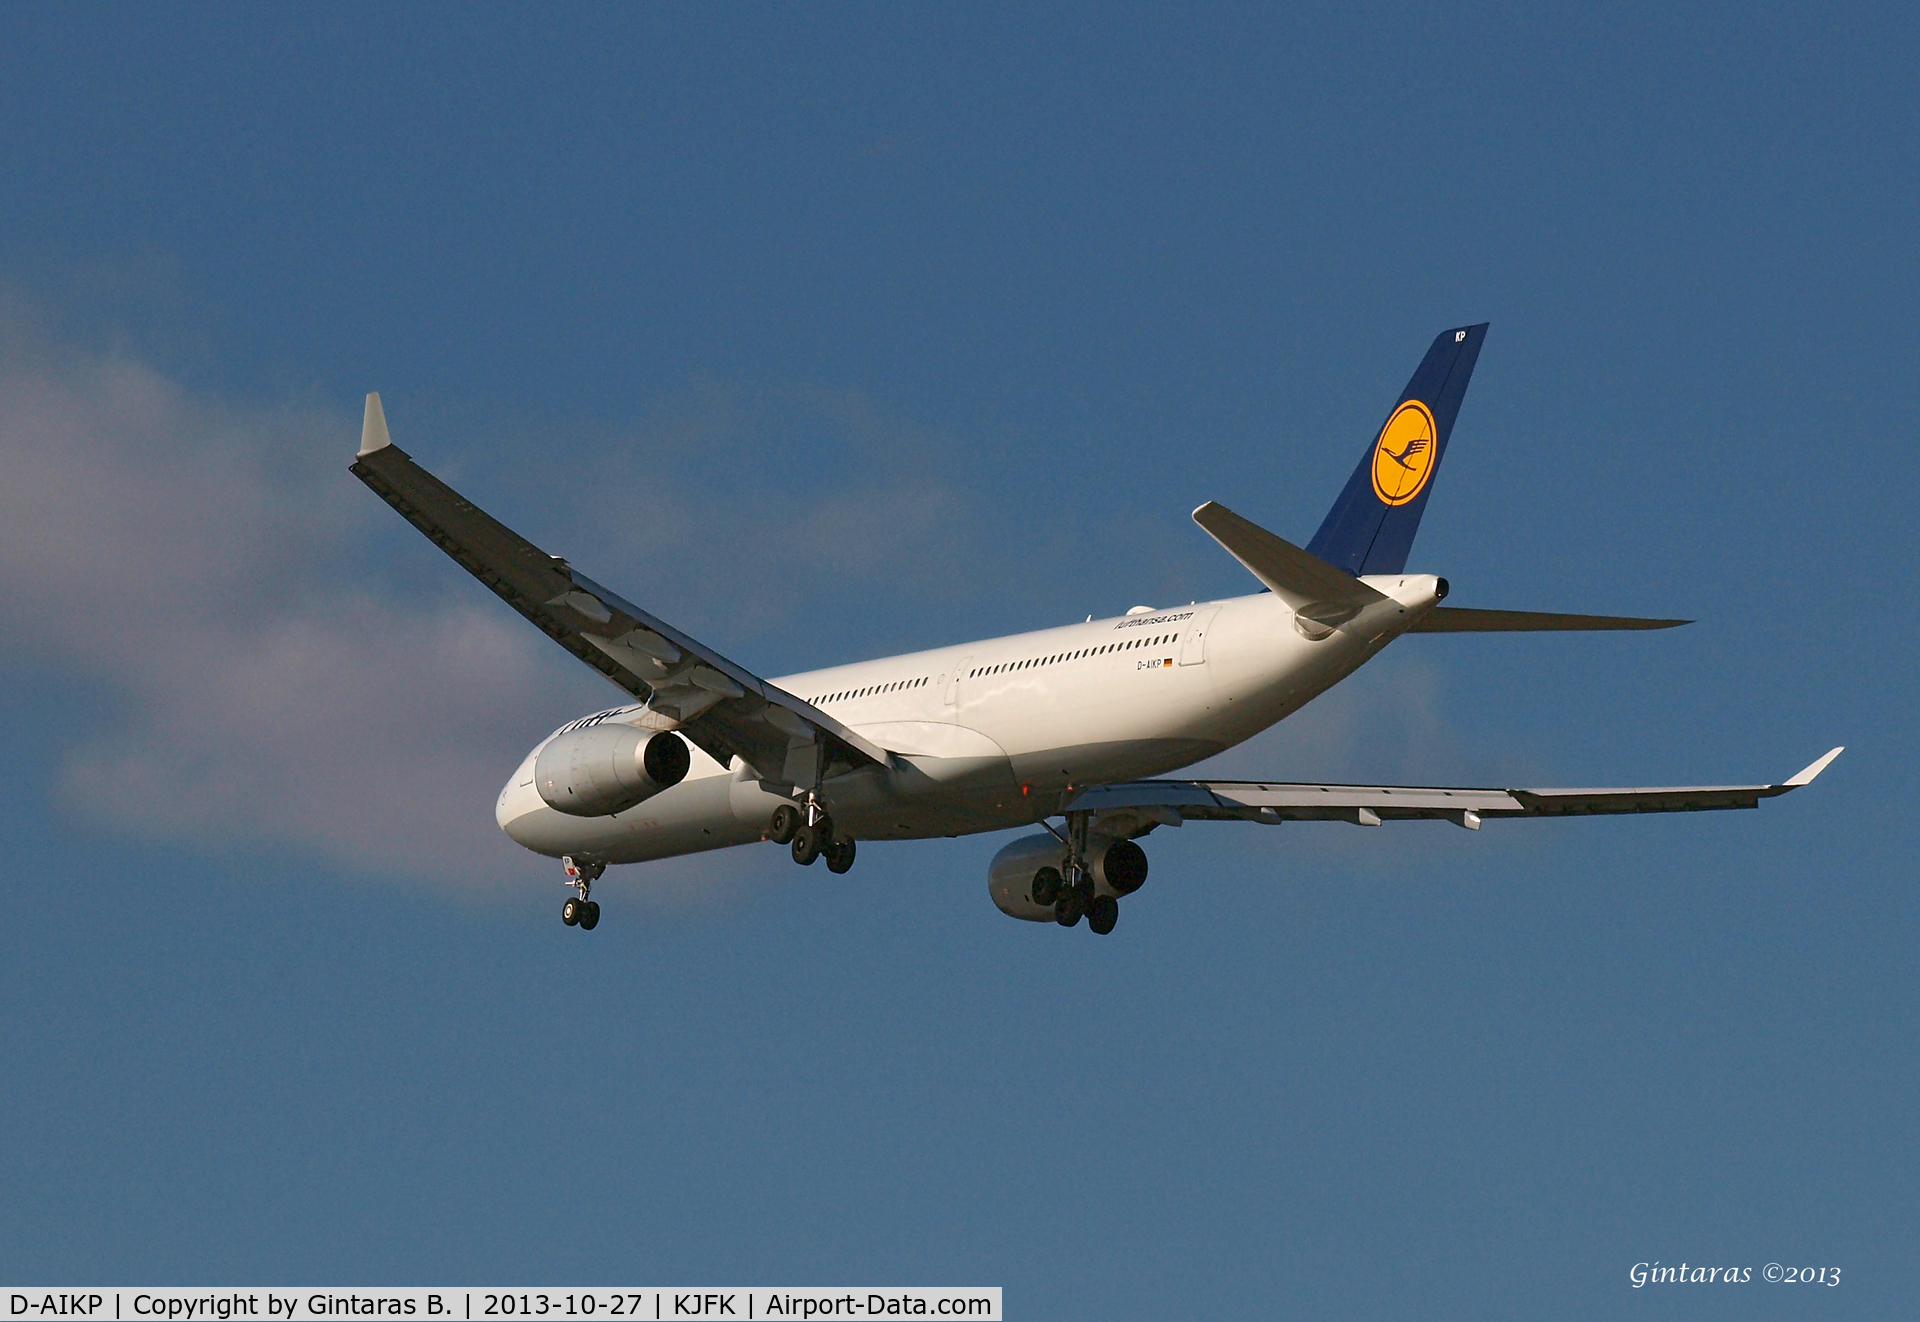 D-AIKP, 2012 Airbus A330-343X C/N 1292, Going to a landing on 31R @ JFK